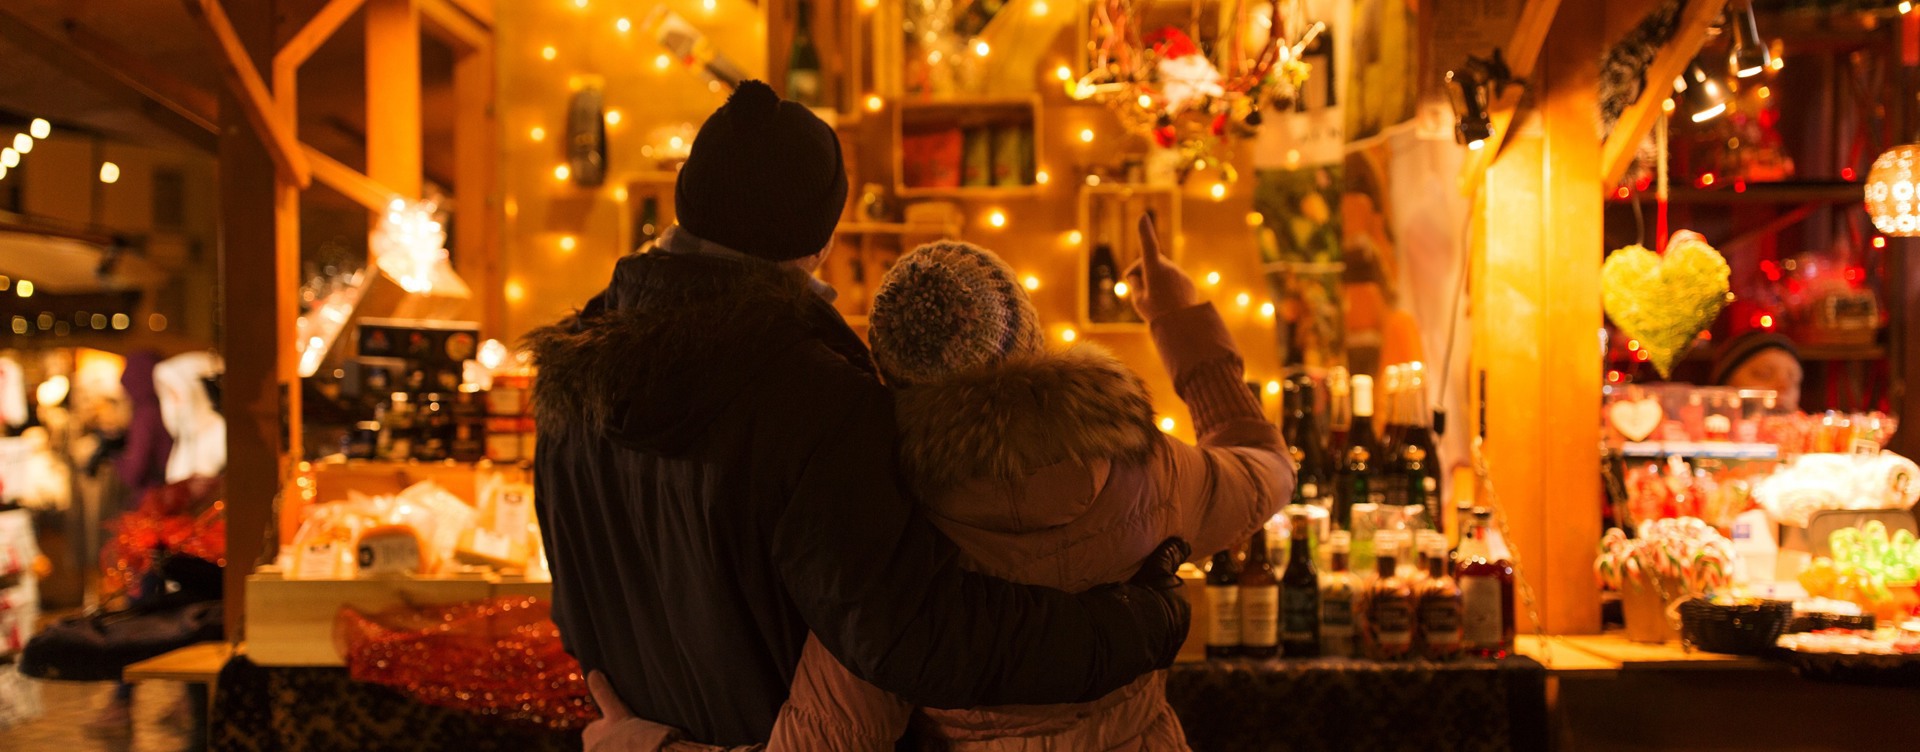 Bezoek de traditionele kerstmarkten
tijdens je verblijf in de Eifel